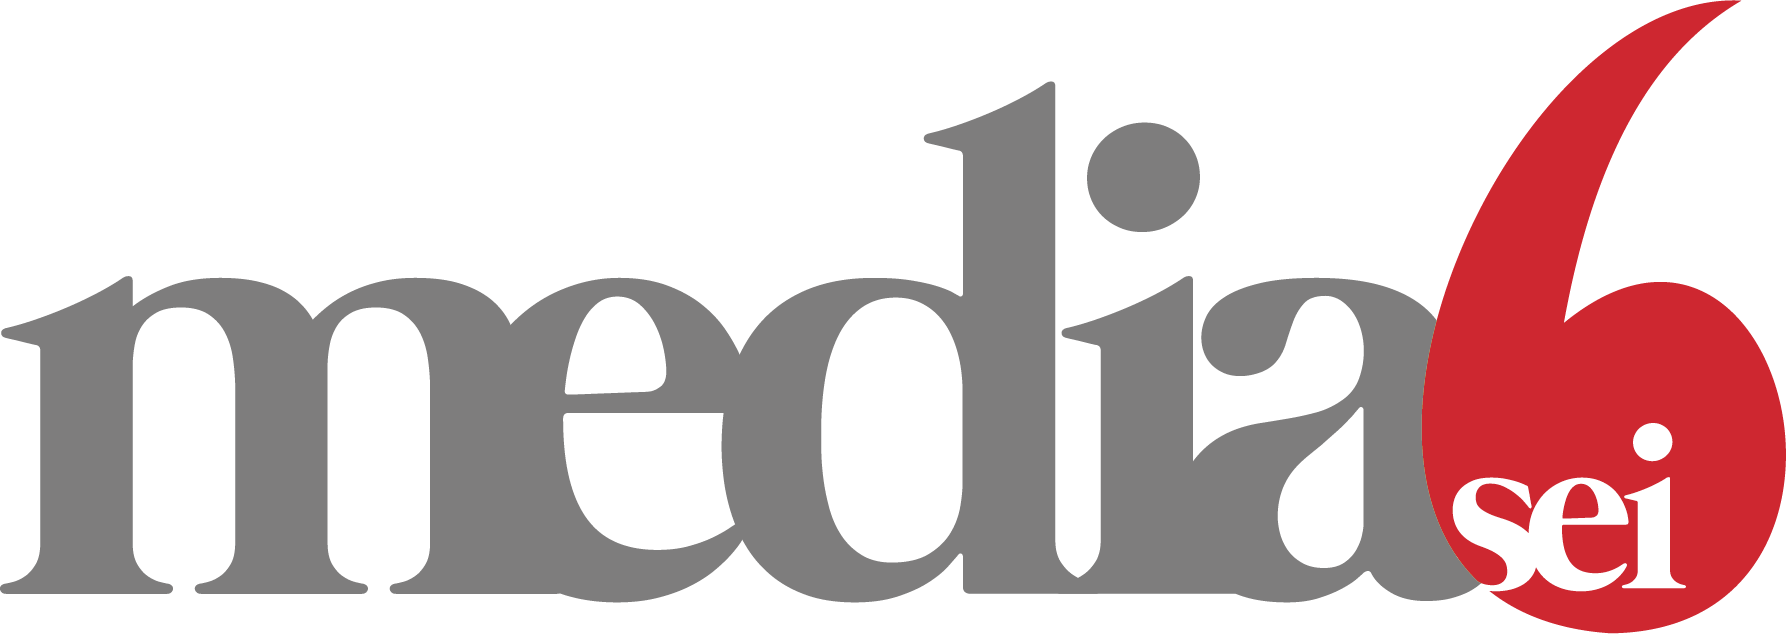 Mediasei logo